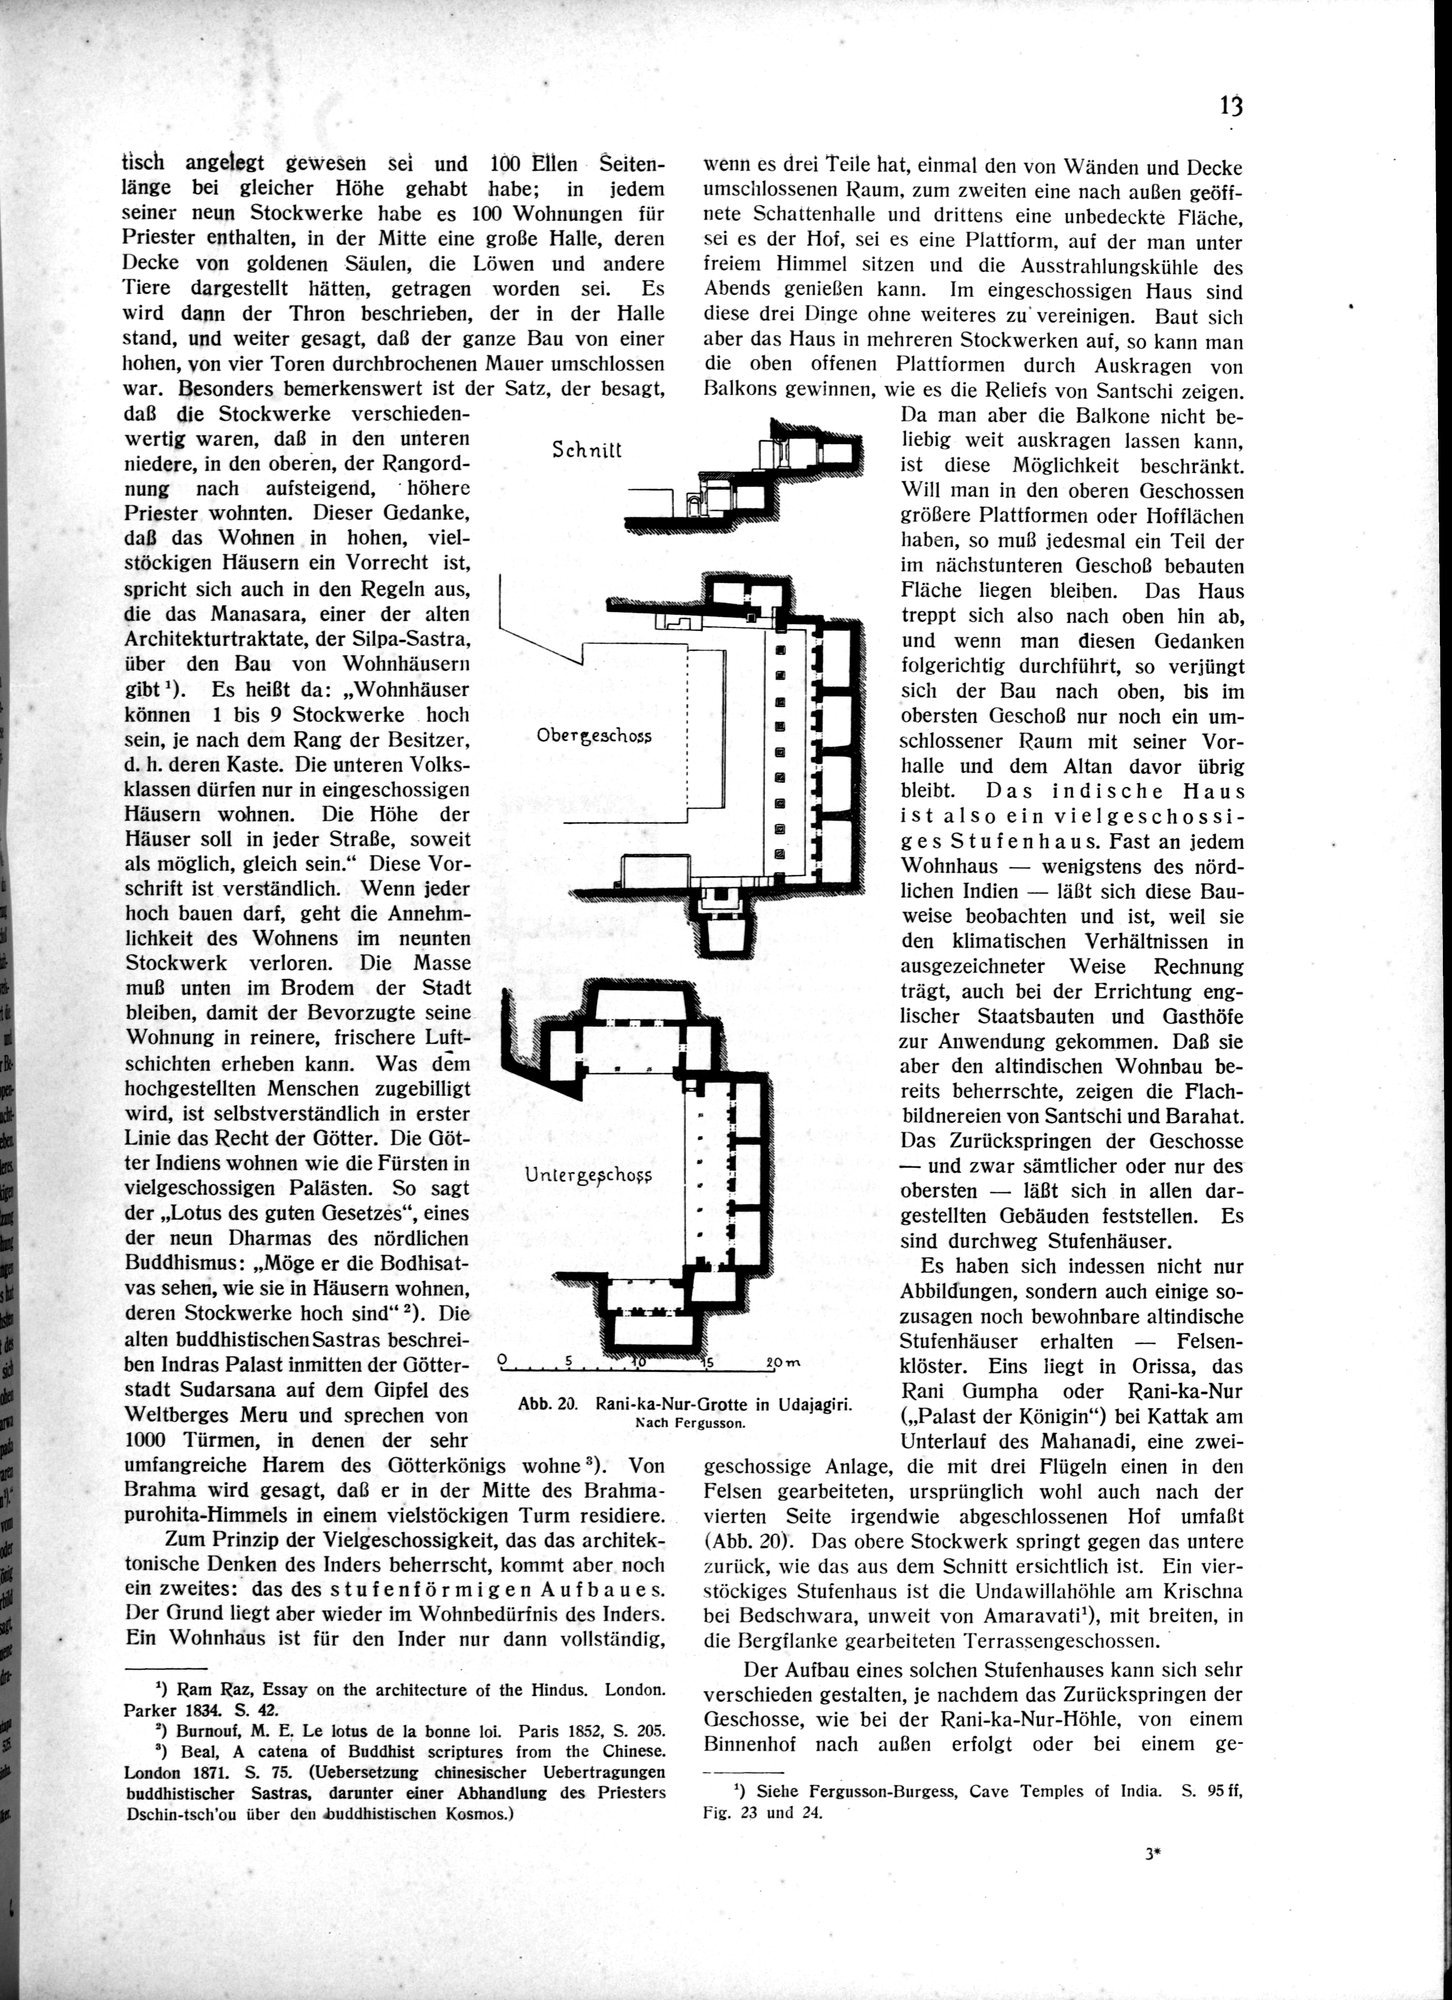 Indische Palaste und Wohnhauser : vol.1 / Page 23 (Grayscale High Resolution Image)